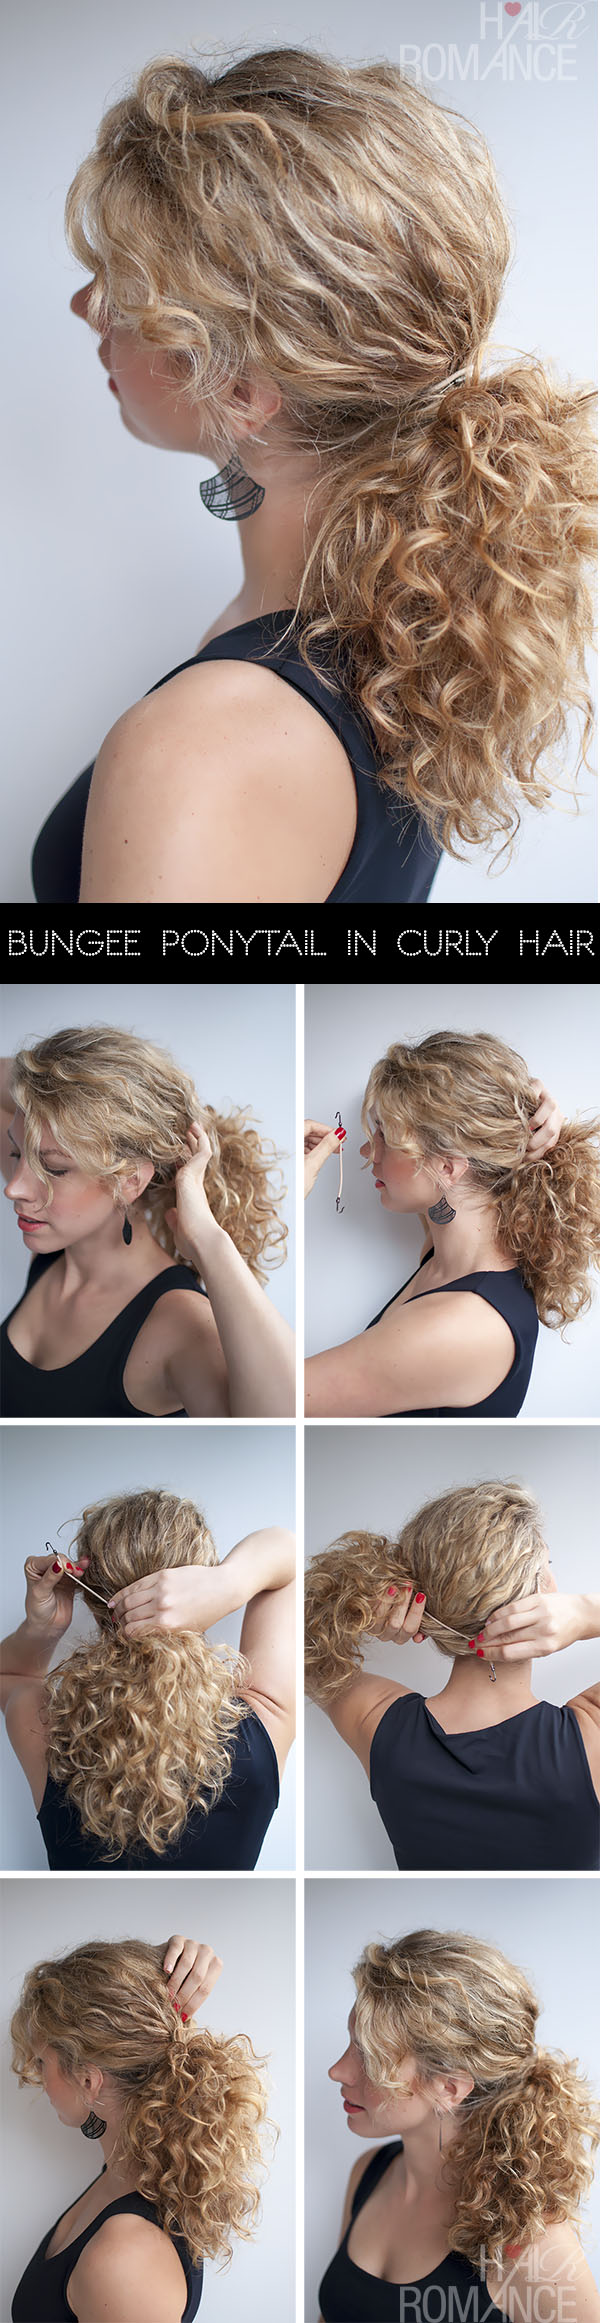 Bungee-Ponytail-Hair-Tutorial-in-curly-hair